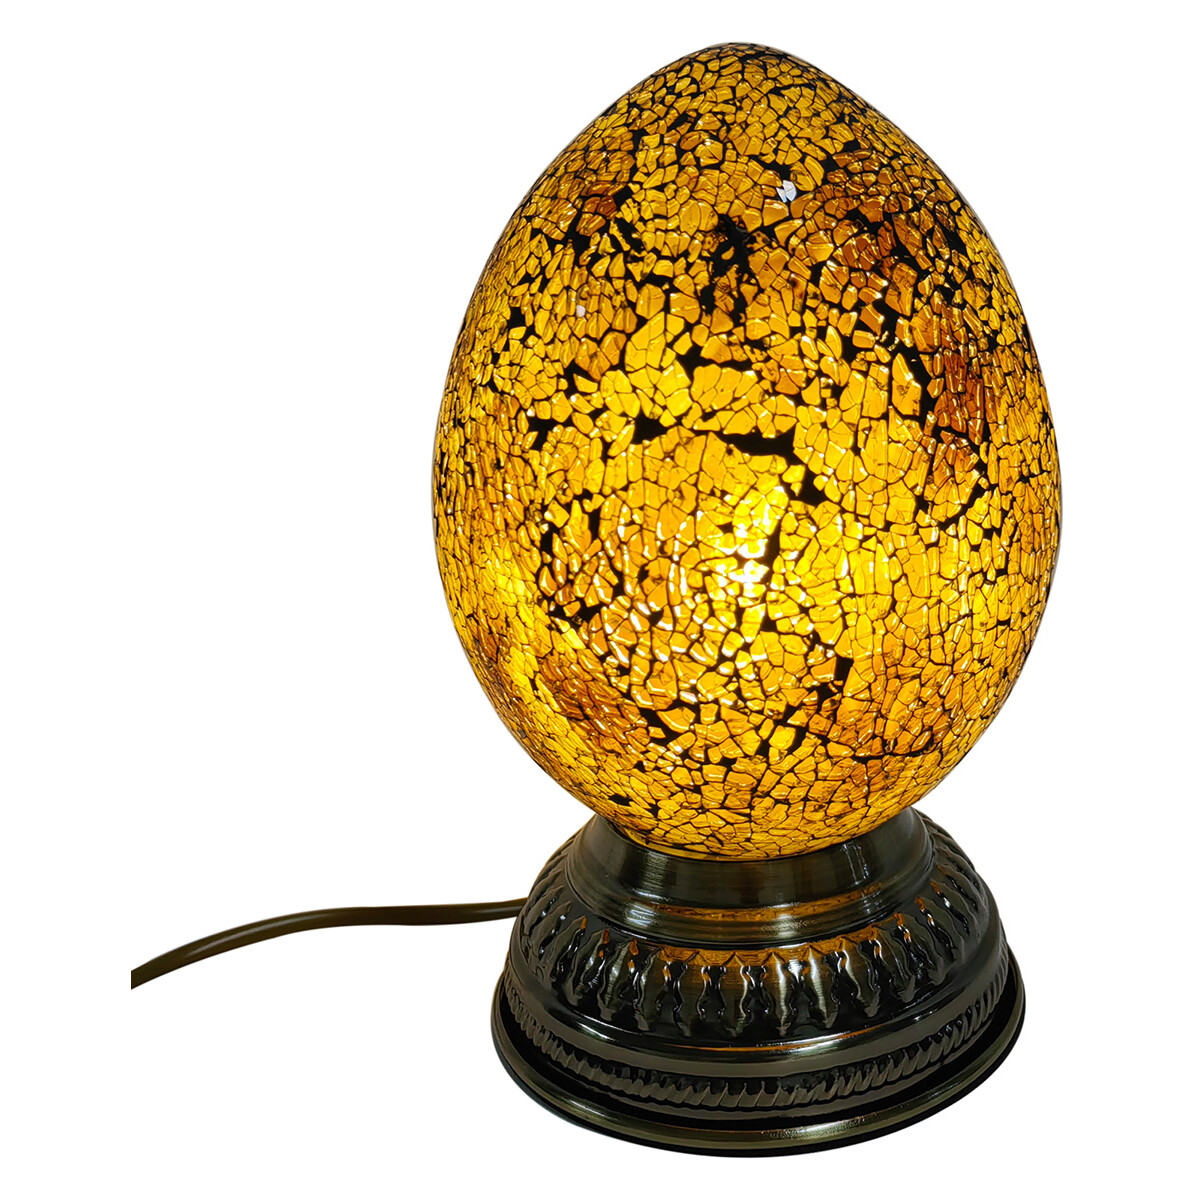 Casa Lámparas de mesa Signes Grimalt Lámpara huevo sobremesa Amarillo